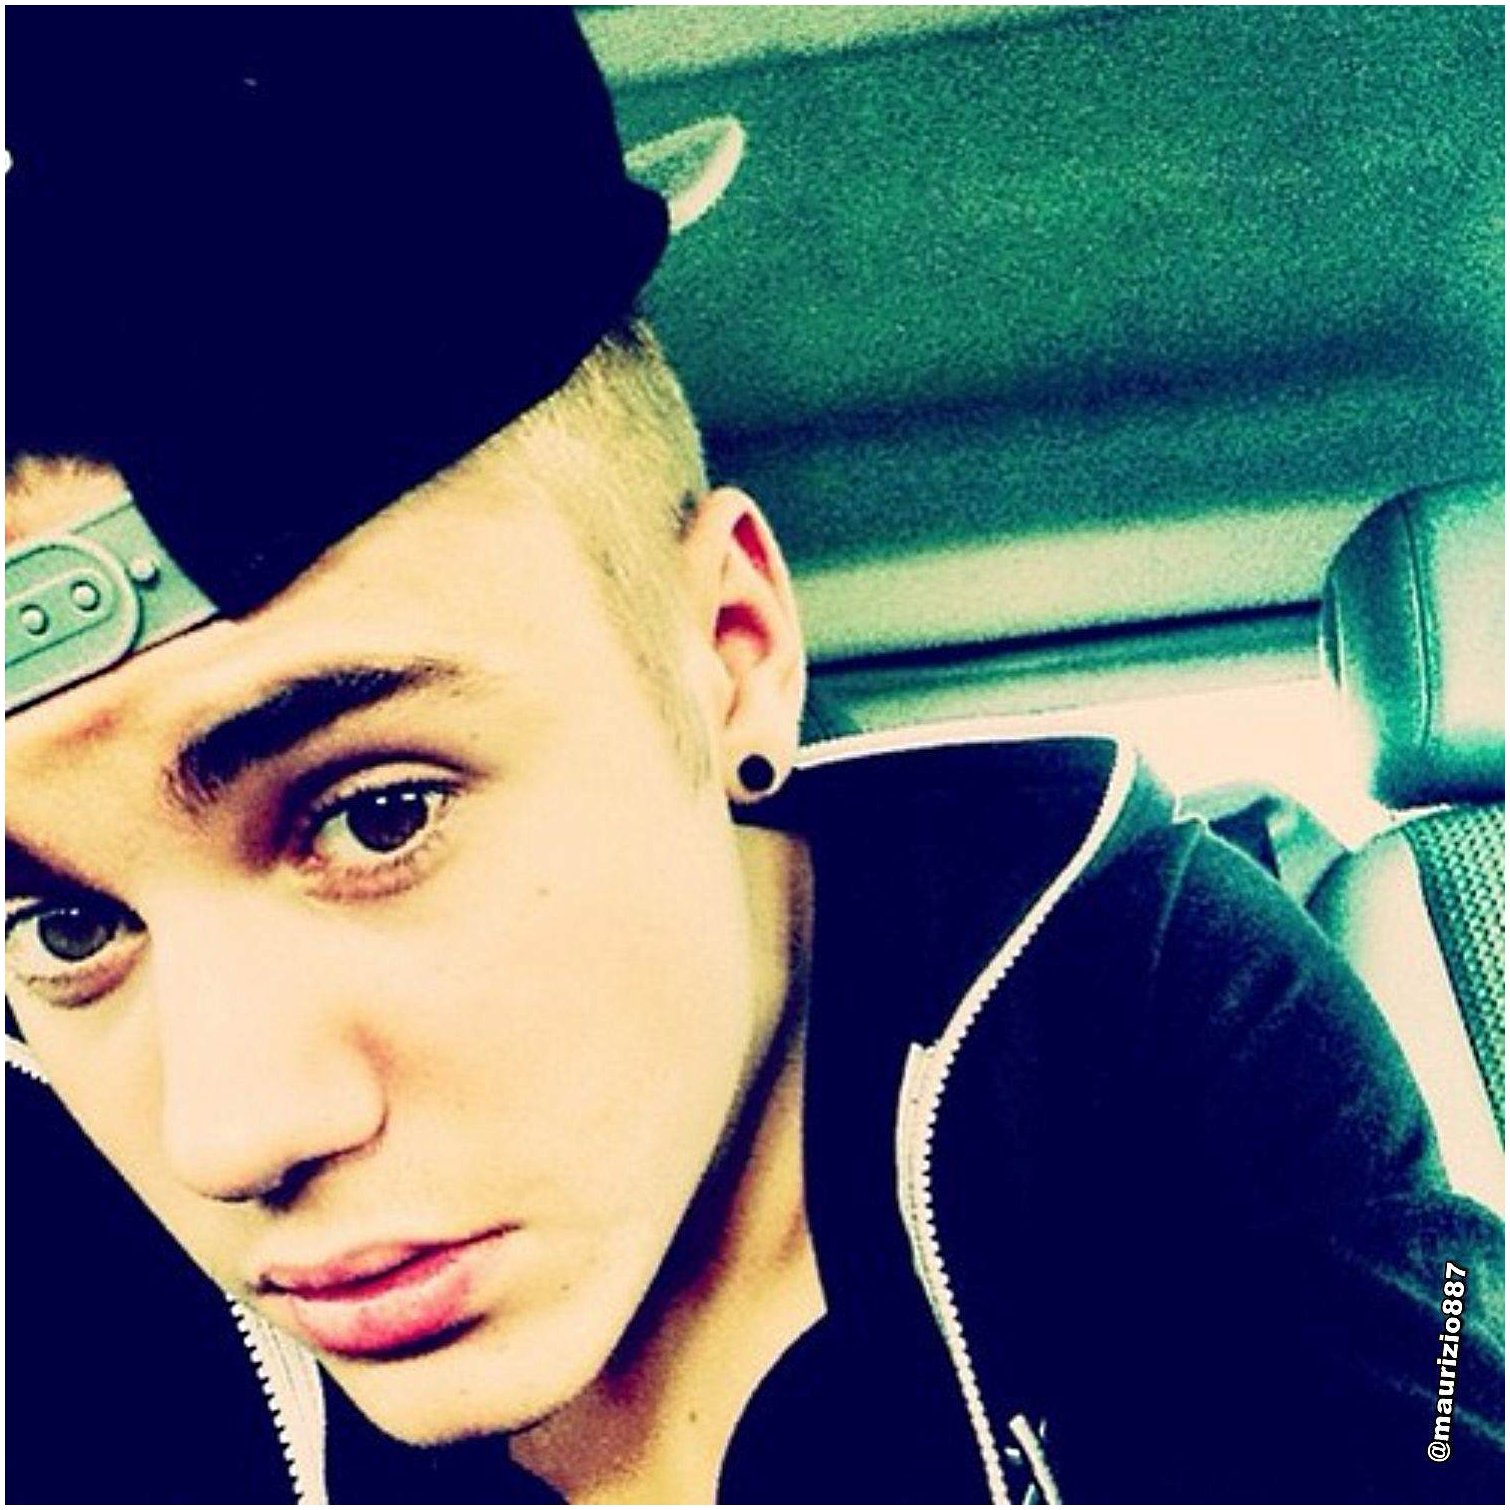 justin bieber instagram Turkey 2013 - Justin Bieber Photo (34376550) - Fanpop